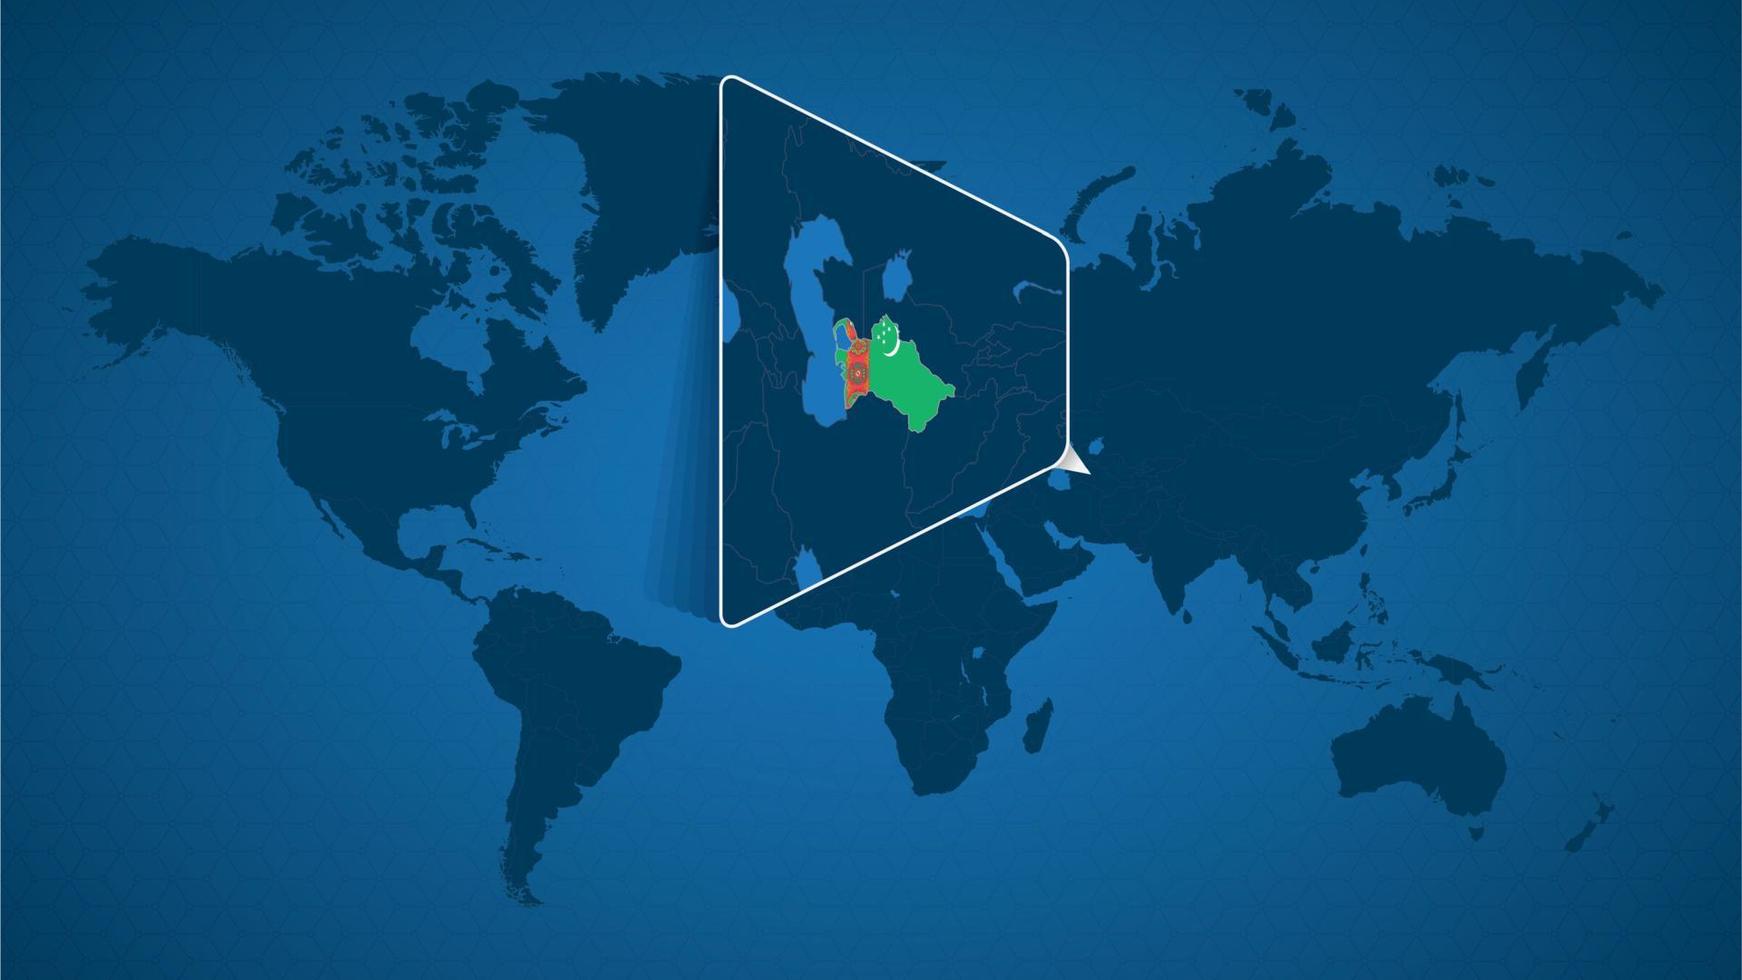 mappa del mondo dettagliata con mappa ingrandita appuntata del turkmenistan e dei paesi vicini. vettore